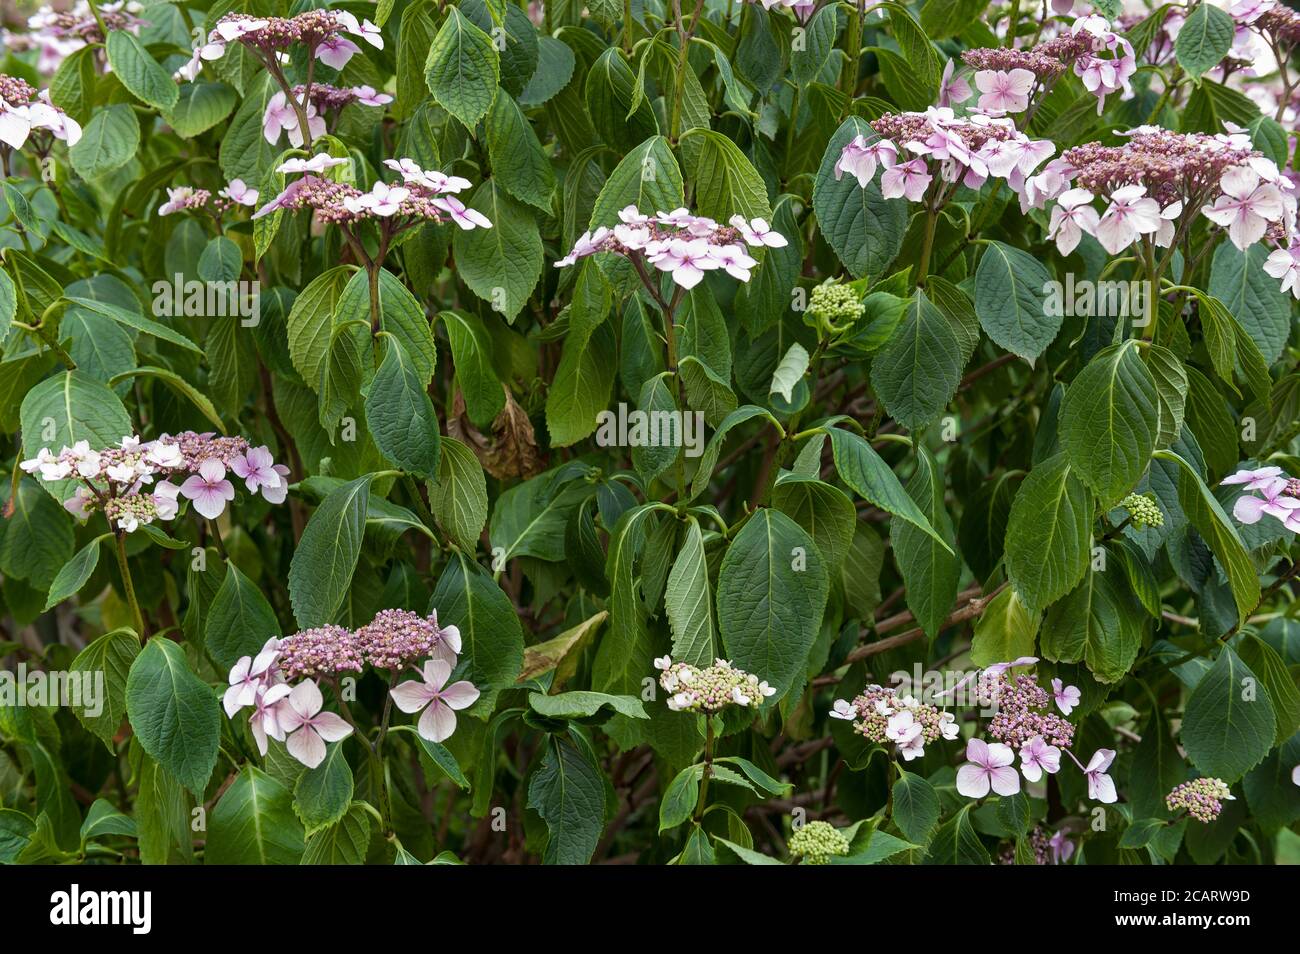 Manque excessif de chaleur et d'eau, Hydrangea aspera plante réduit la perte d'eau par l'évocation, la transpiration, laissant les feuilles flétrissent auto-préservation, craie Banque D'Images